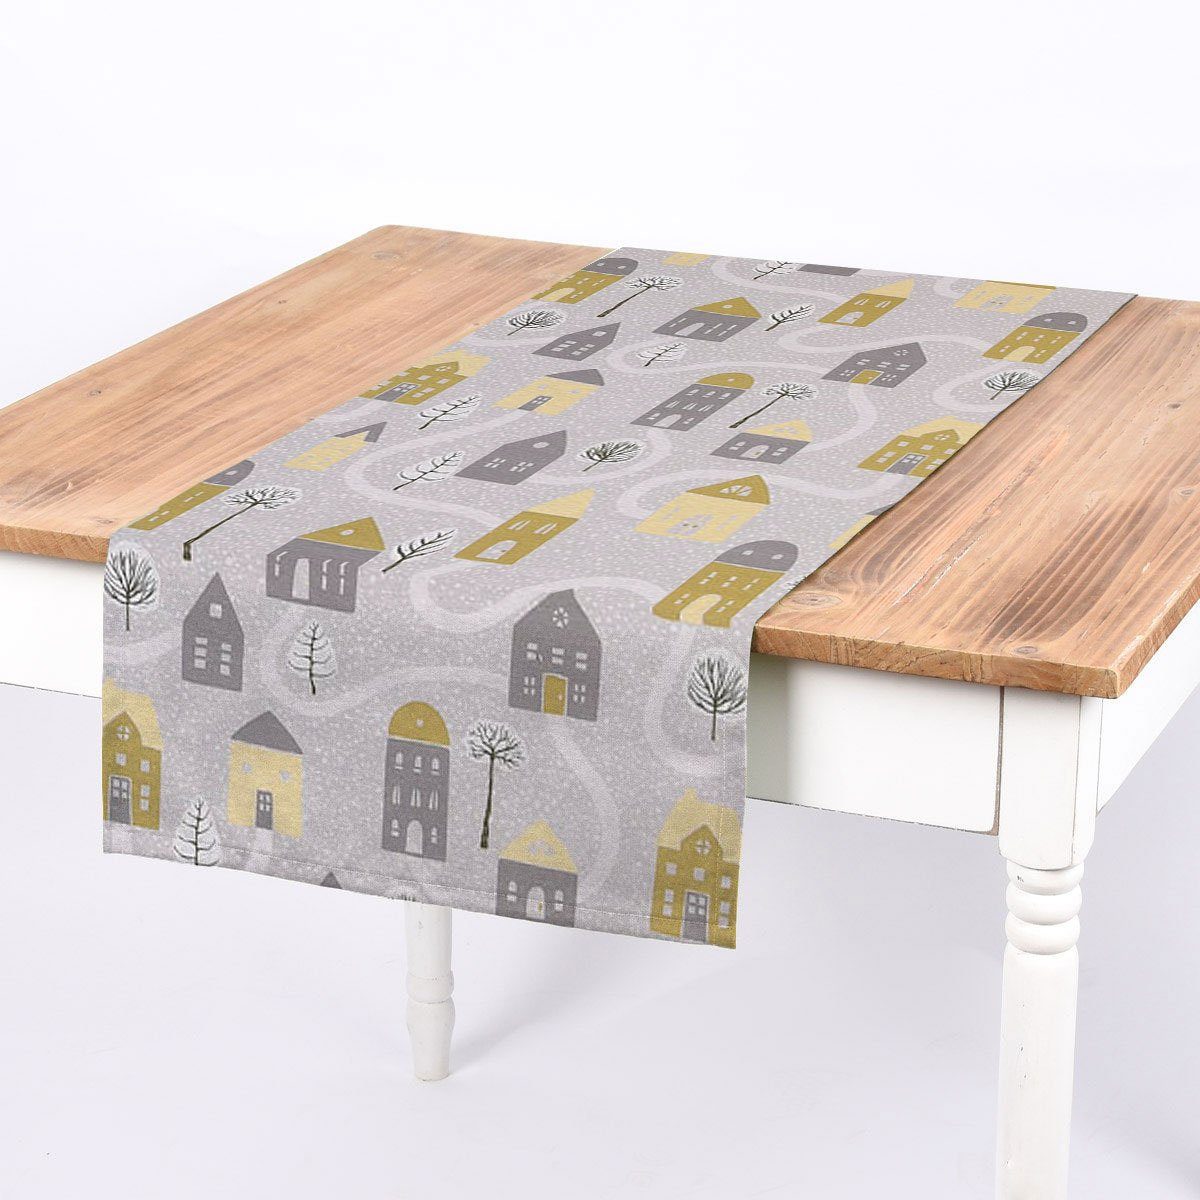 SCHÖNER LEBEN. Tischläufer SCHÖNER LEBEN. Tischläufer Aspen Häuser grau gelb 40x160cm, handmade | Tischläufer